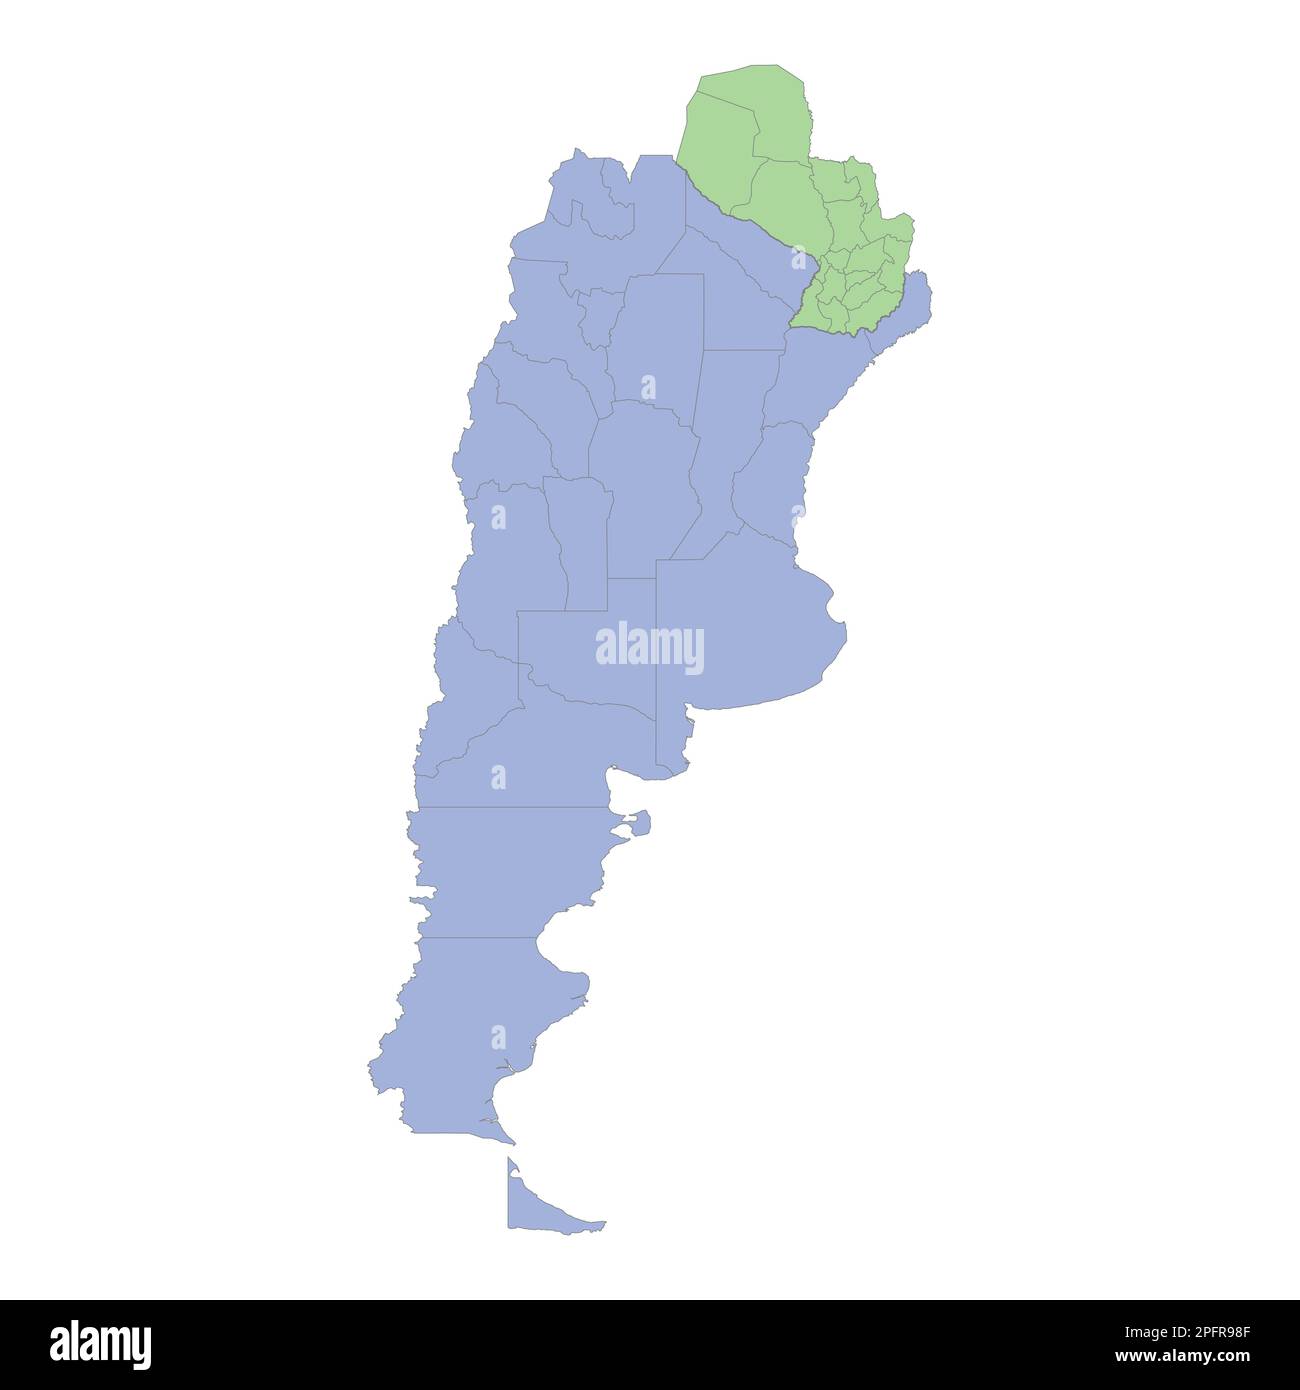 Mappa politica di alta qualità di Argentina e Paraguay con i confini delle regioni o province. Illustrazione vettoriale Illustrazione Vettoriale